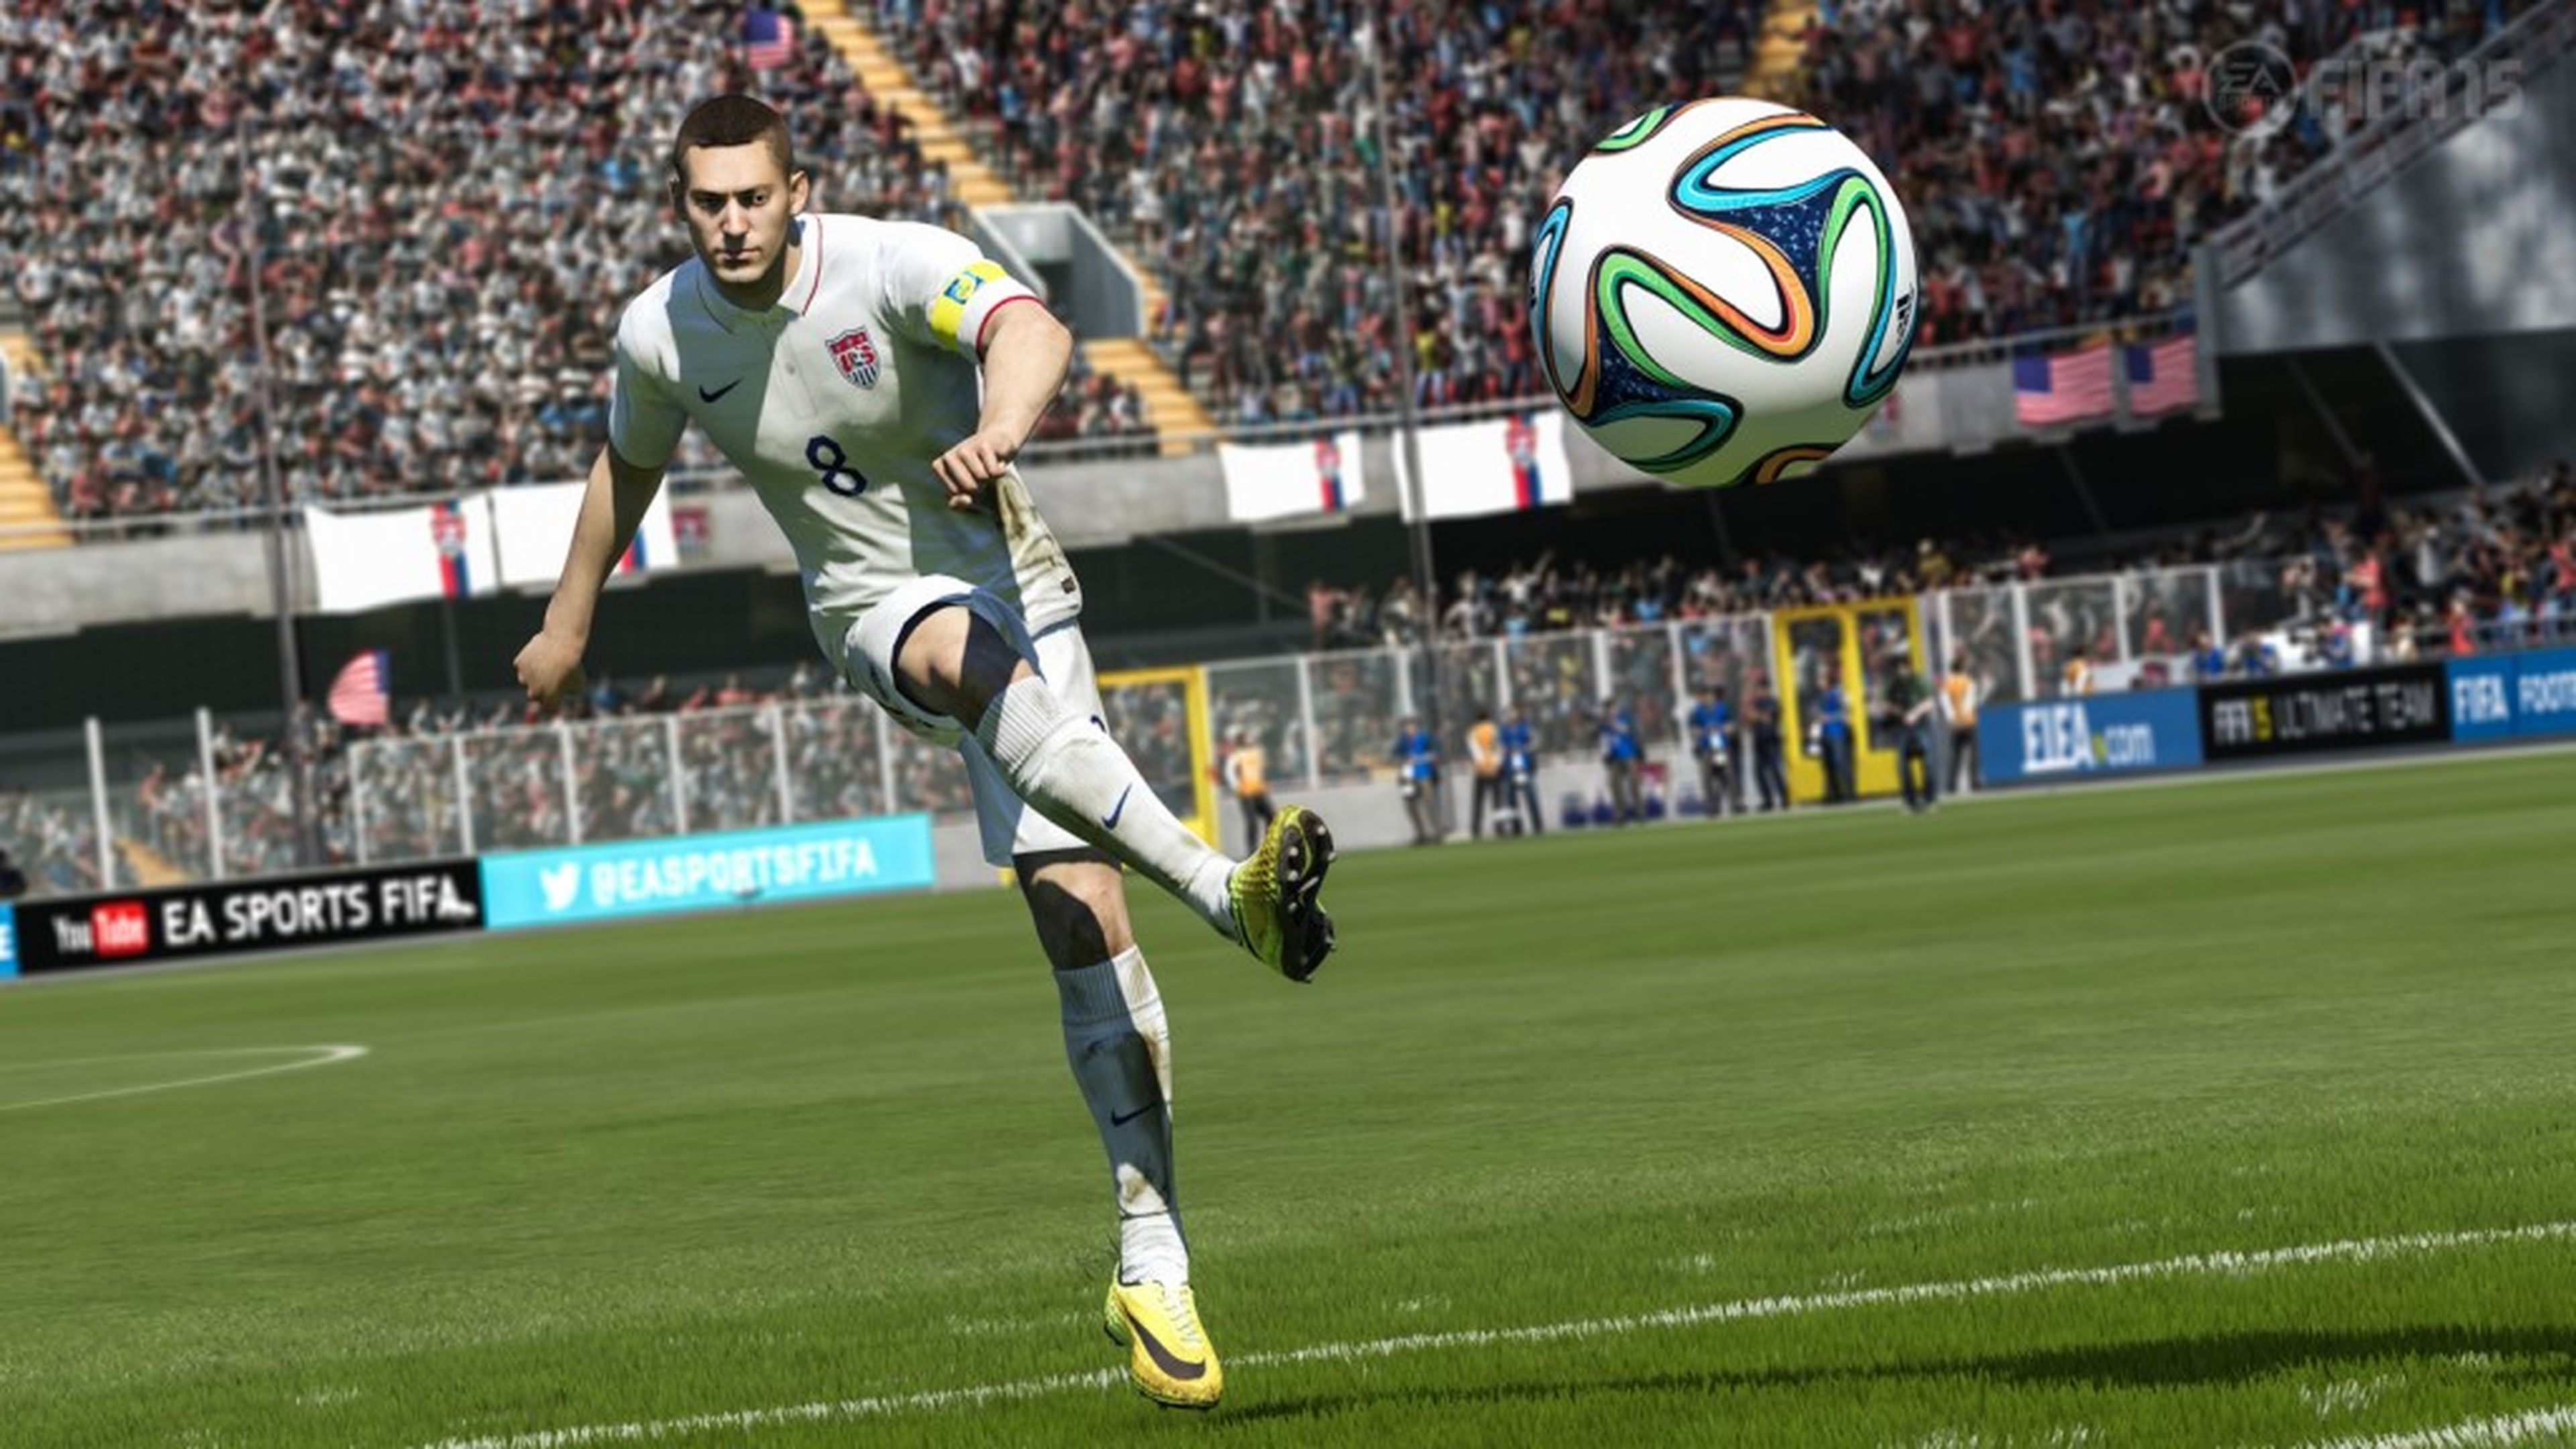 EA explica la ausencia de fútbol femenino en FIFA 15